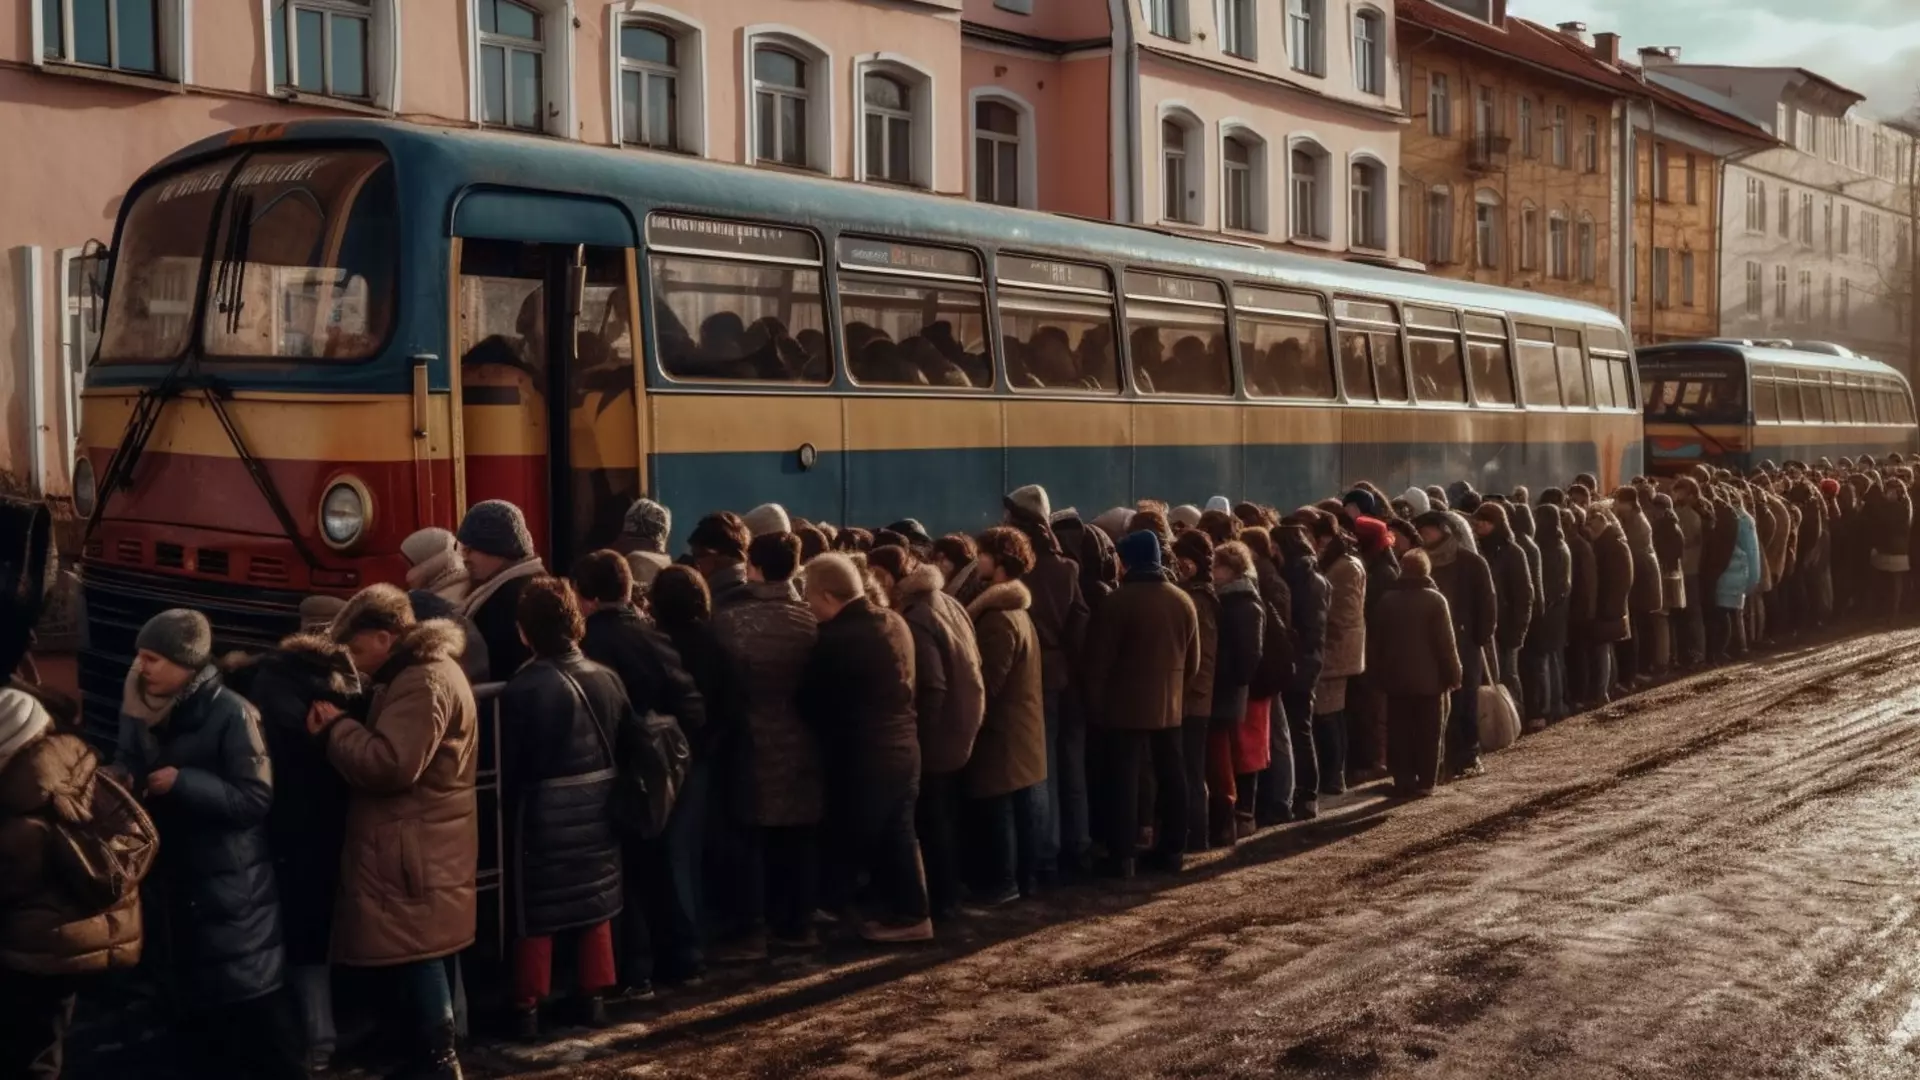 Оренбуржцы снова будут толпиться в набитых дачных автобусах.